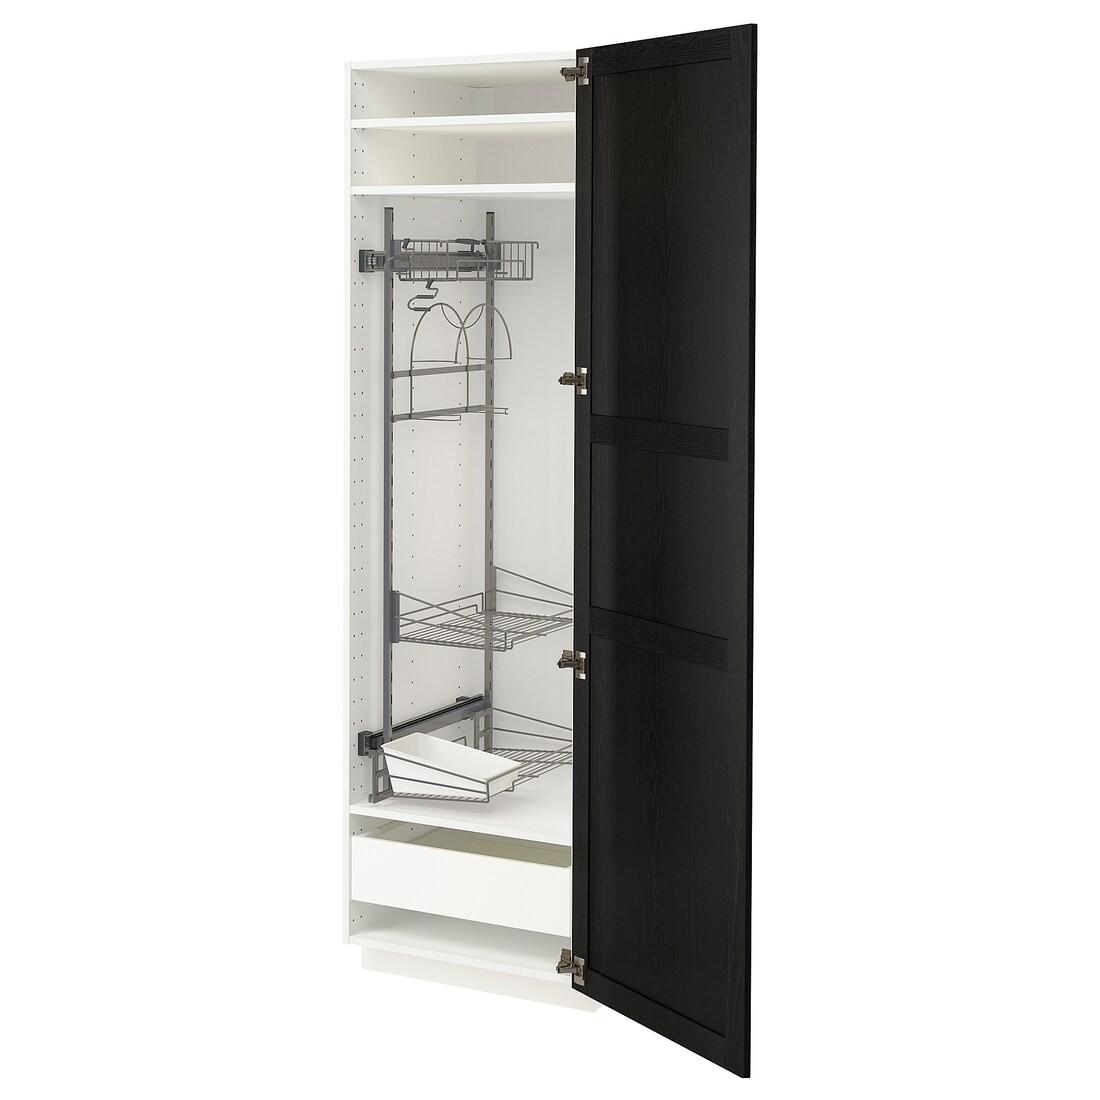 METOD МЕТОД / MAXIMERA МАКСИМЕРА Высокий шкаф с отделением для аксессуаров для уборки, белый / Lerhyttan черная морилка, 60x60x200 см